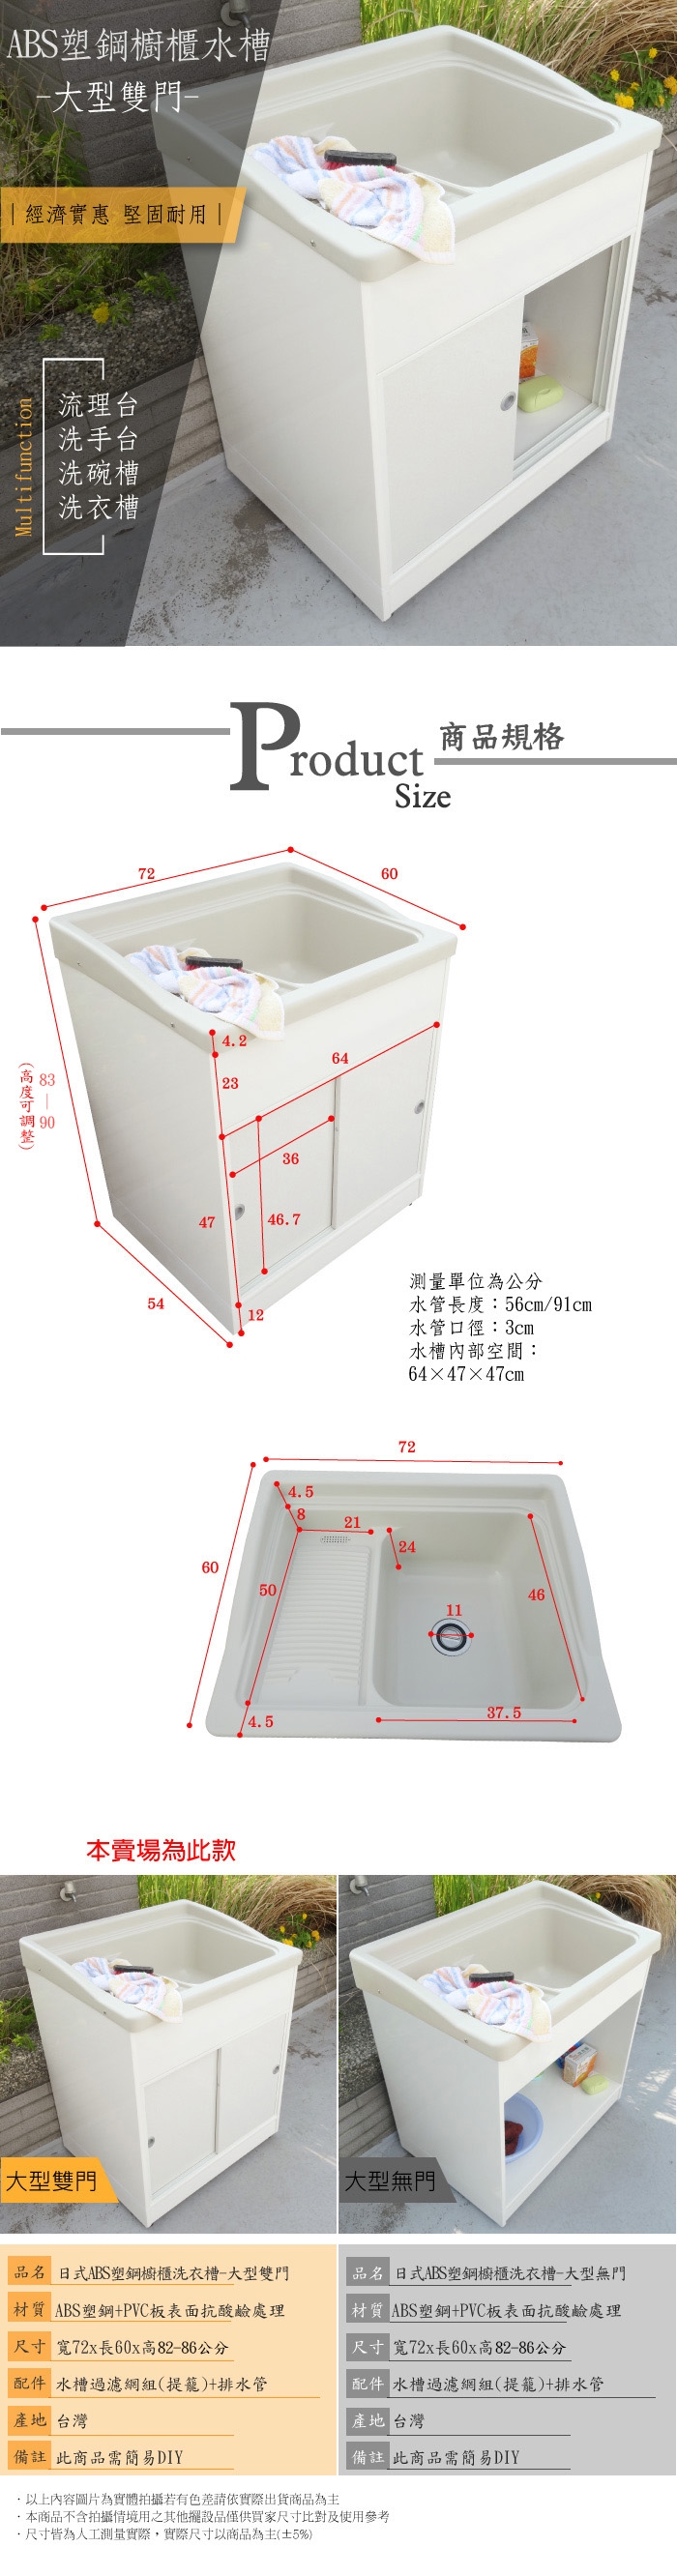 【Abis】雙11爆殺組~ABS櫥櫃式大型塑鋼雙門洗衣槽1組 +小型塑鋼洗衣槽1組